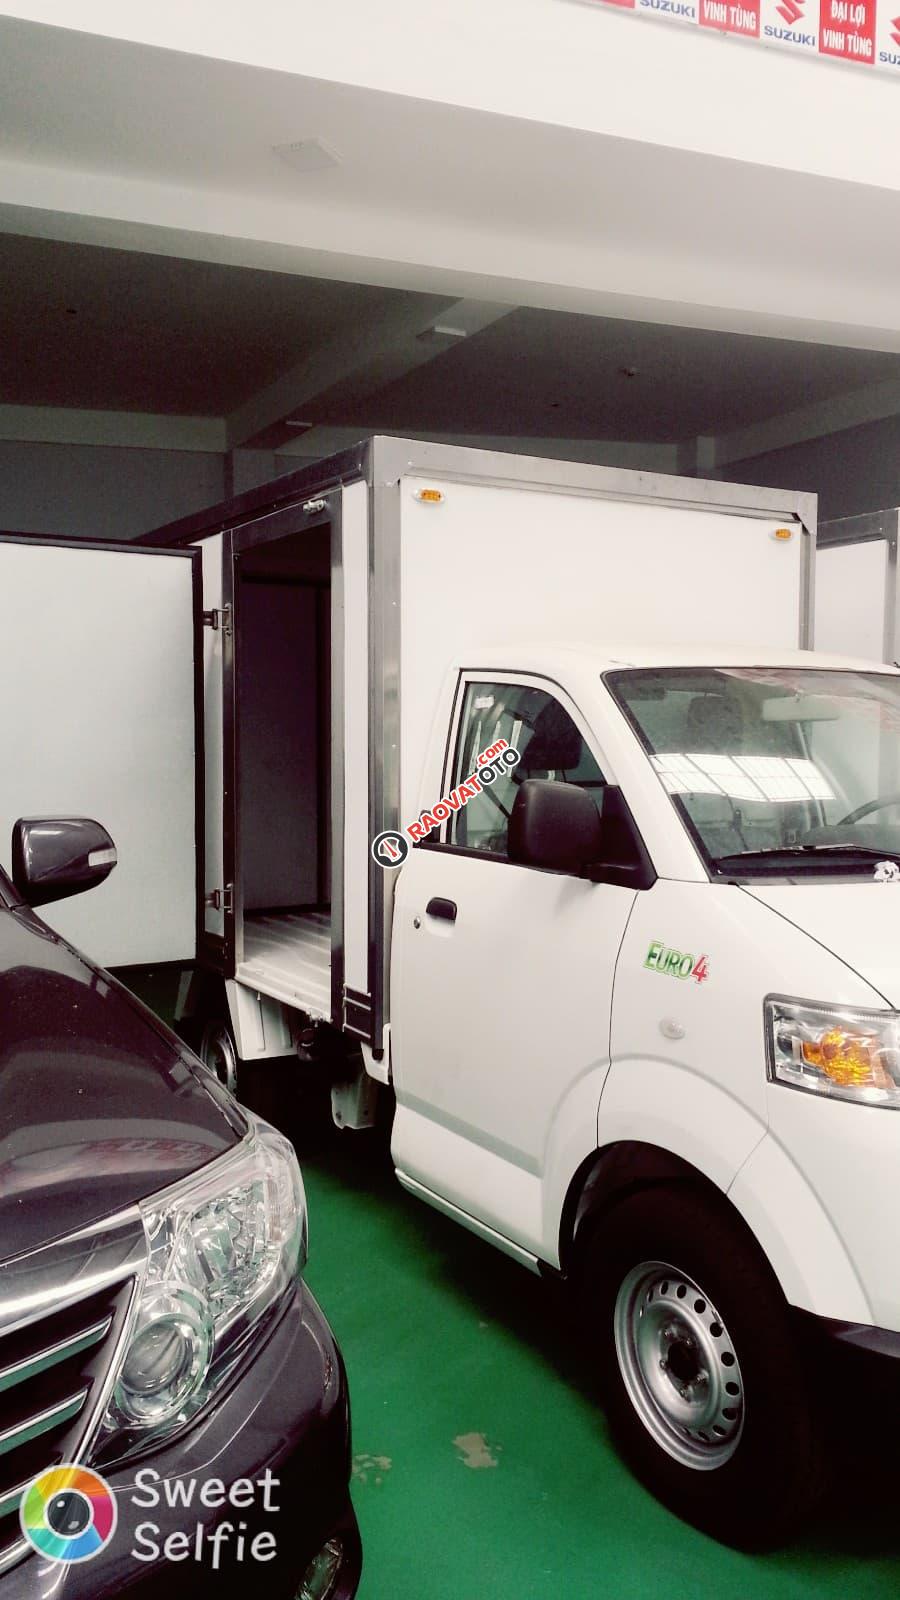 Đại lý xe tải 700kg - Suzuki Bình Định-3